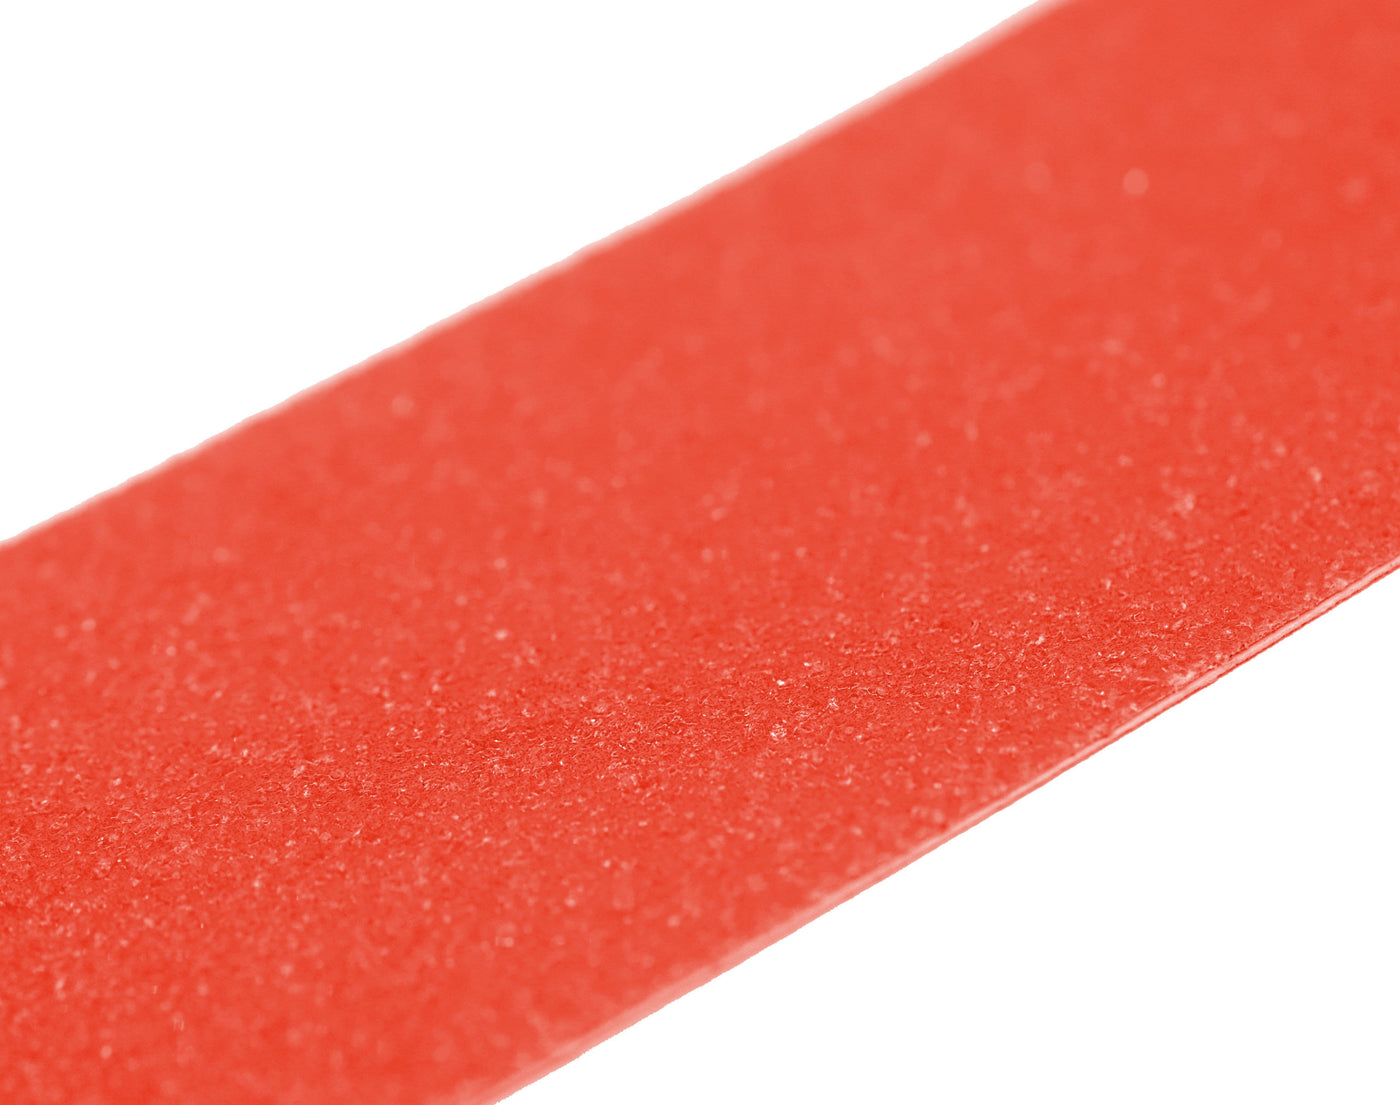 Teak Tuning 3PK Fingerboard Skate Grip Tape, Red Velvet Edition - 38mm x 114mm